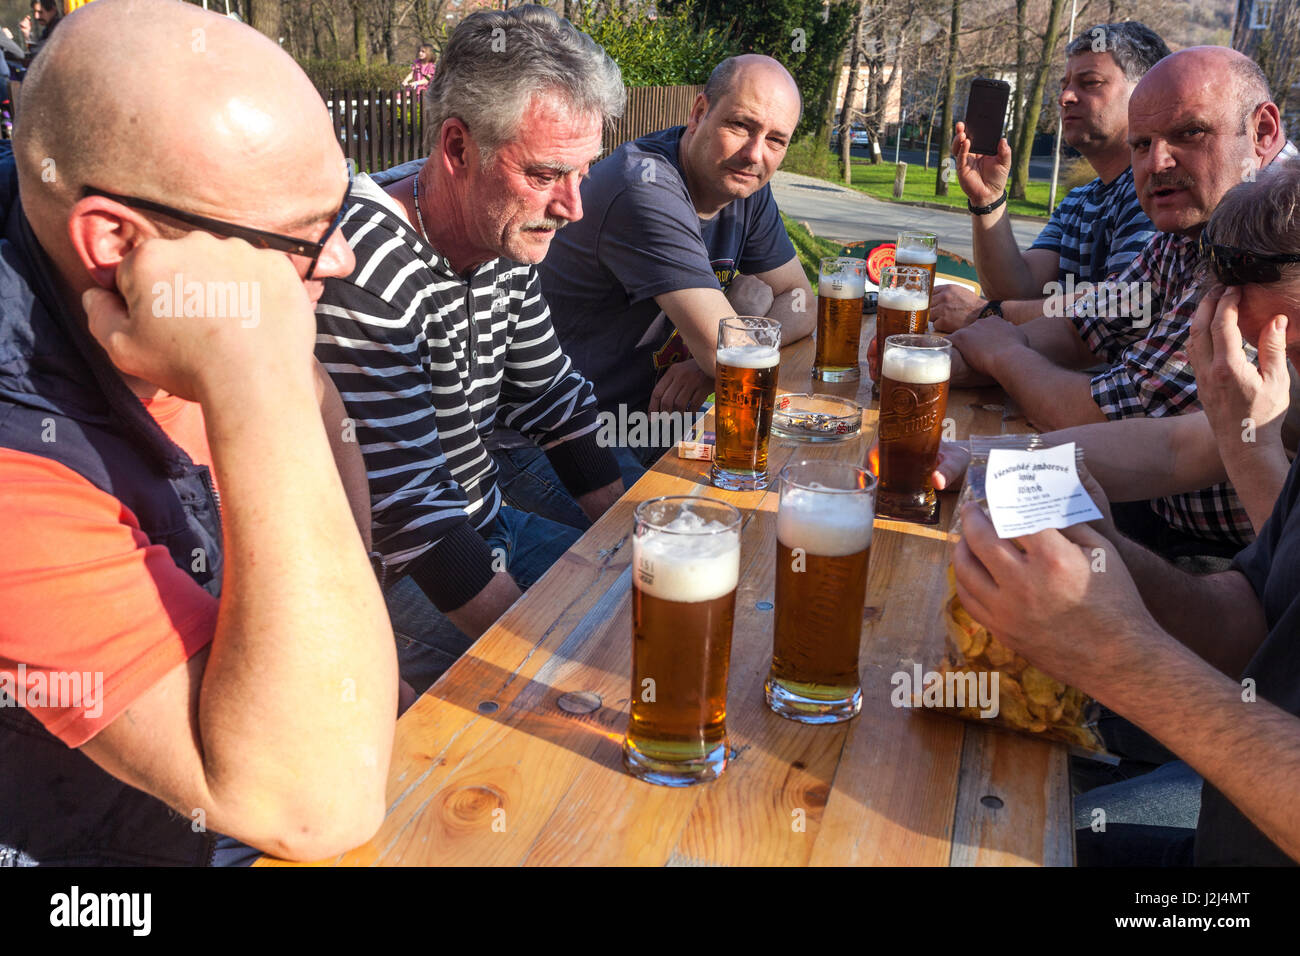 People meetings, men drinking beer, Czech beer garden, Czech Republic Stock Photo